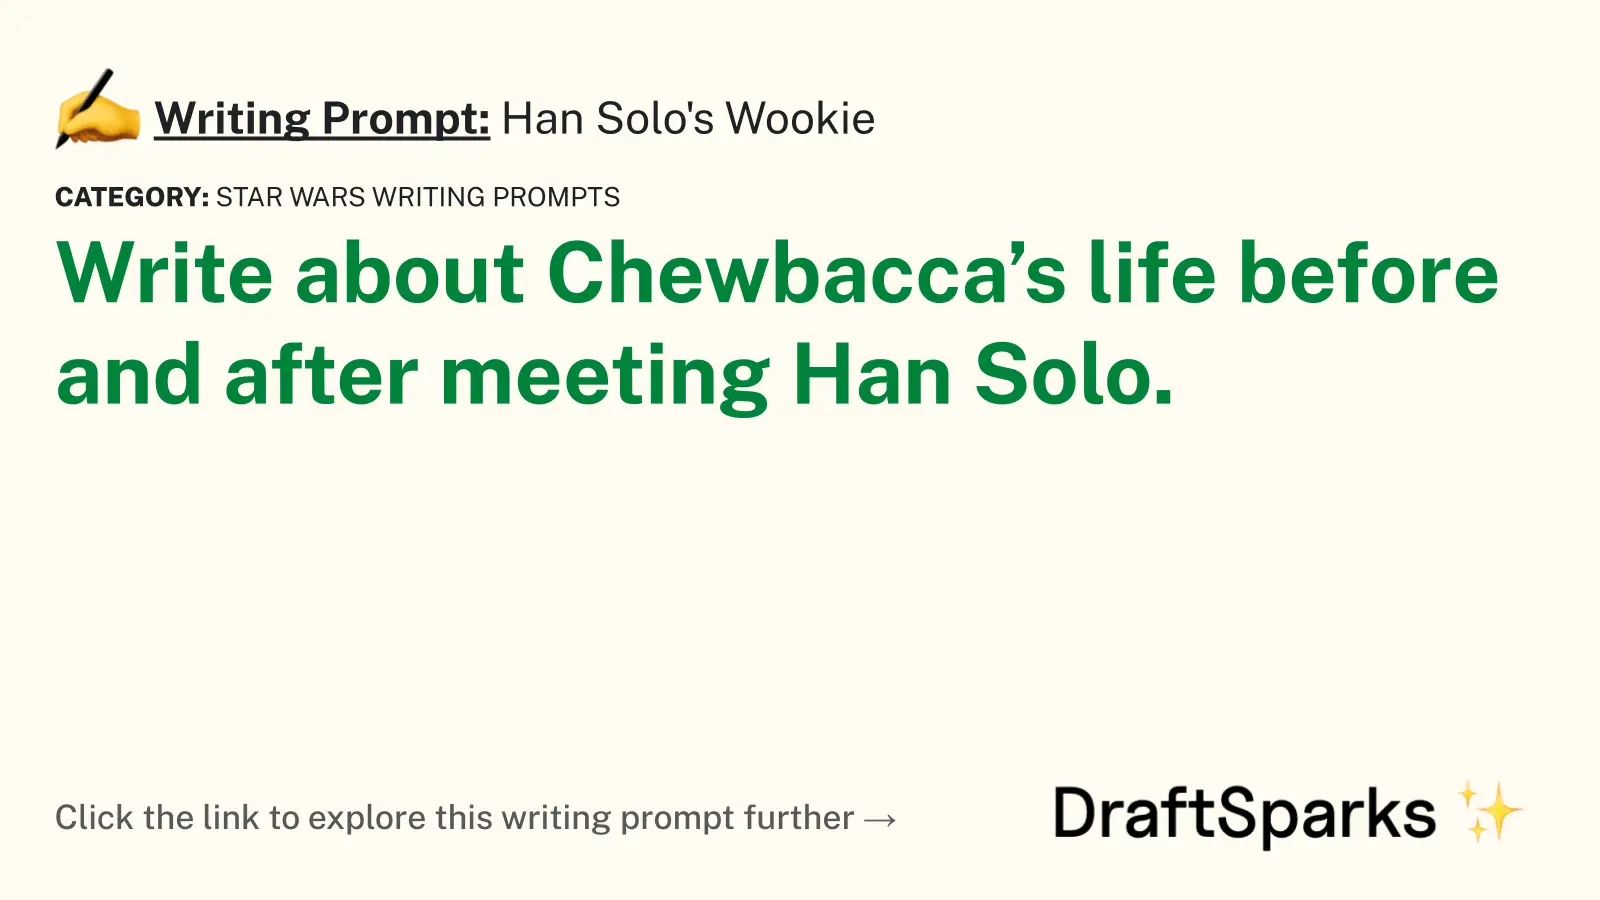 Han Solo’s Wookie